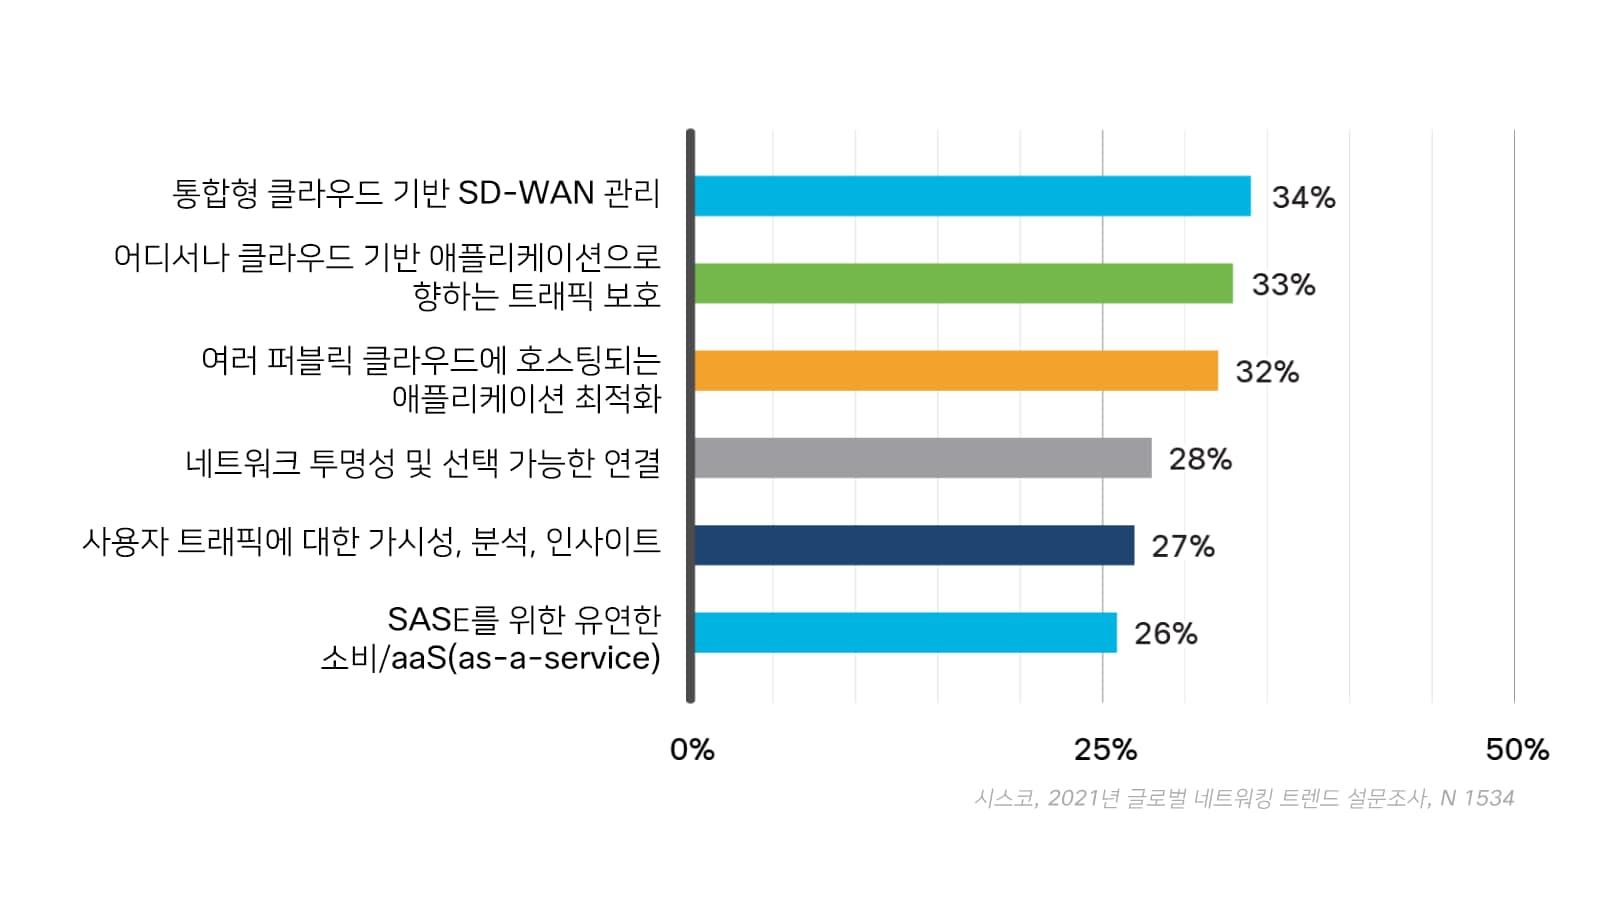 기업의 우선순위에 오른 SASE 기능을 보여주는 그래프 34%는 통합형 클라우드 기반 SD-WAN 관리를, 33%는 어디서나 클라우드 기반 애플리케이션으로 향하는 트래픽 보호를, 32%는 여러 퍼블릭 클라우드에 호스팅되는 애플리케이션 최적화를, 28%는 네트워크 투명성 및 선택 가능한 연결을, 27%는 사용자 트래픽에 대한 가시성, 분석, 인사이트를, 26%는 유연한 SASE 소비/aaS(as-a-service)를 꼽았습니다.